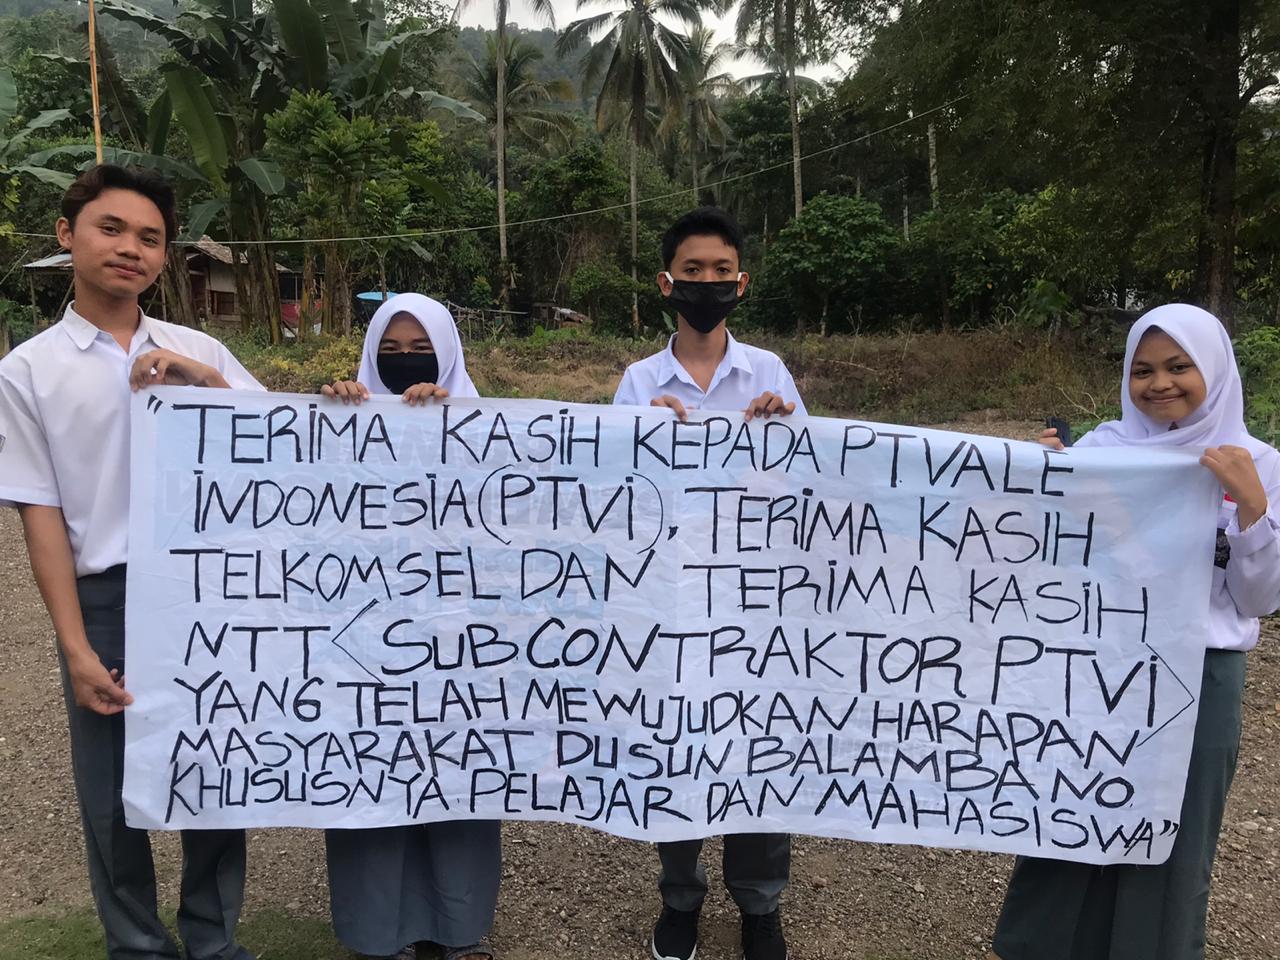 Harapannya Dikabulkan, Pelajar Dusun Balambano Termakasih PT Vale Indonesia Adakan Jaringan Internet